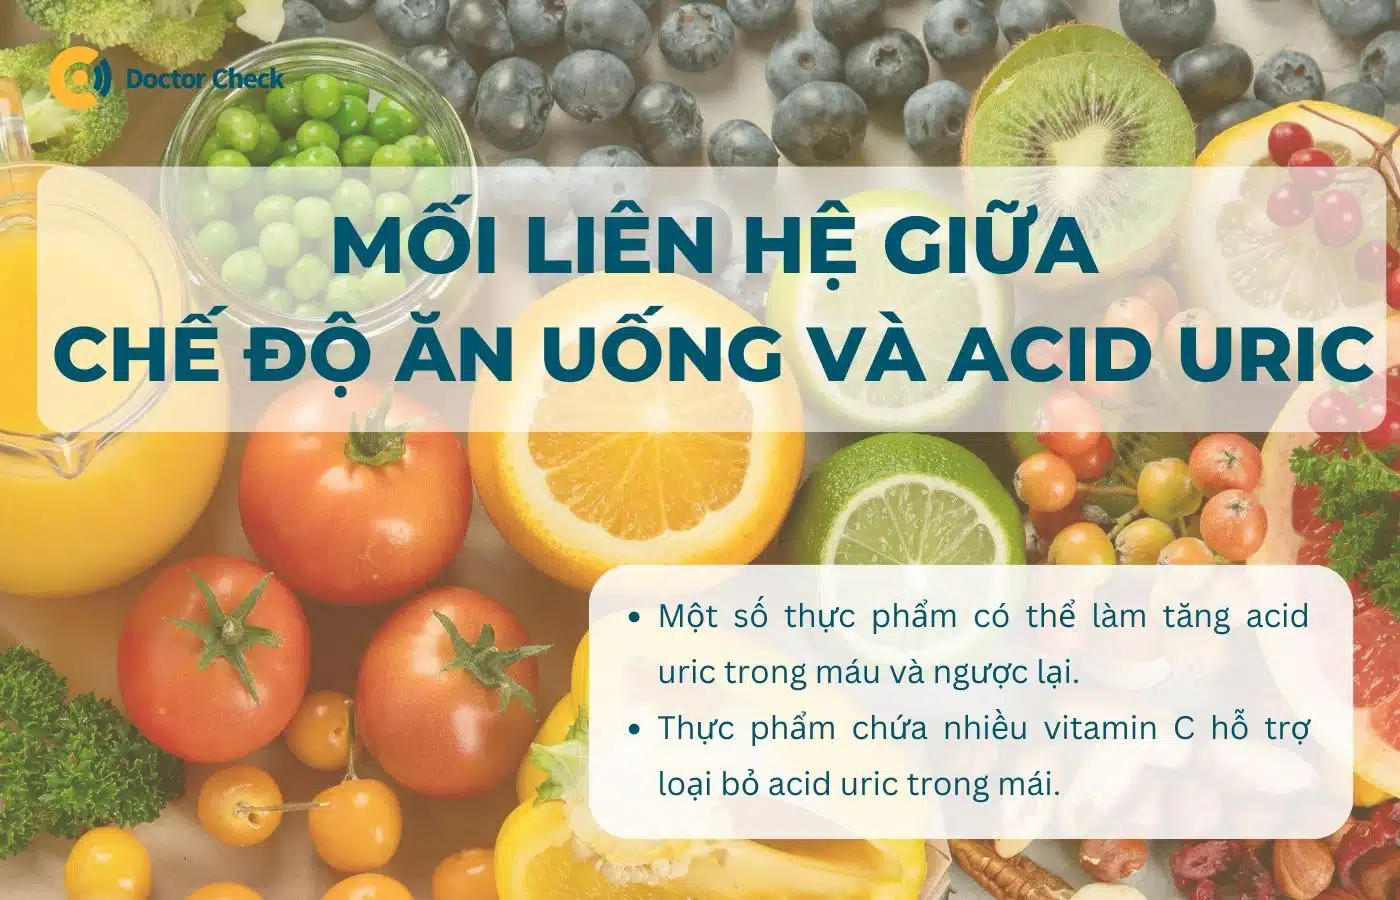 Mối liên hệ giữa chế độ ăn uống và acid uric là gì?